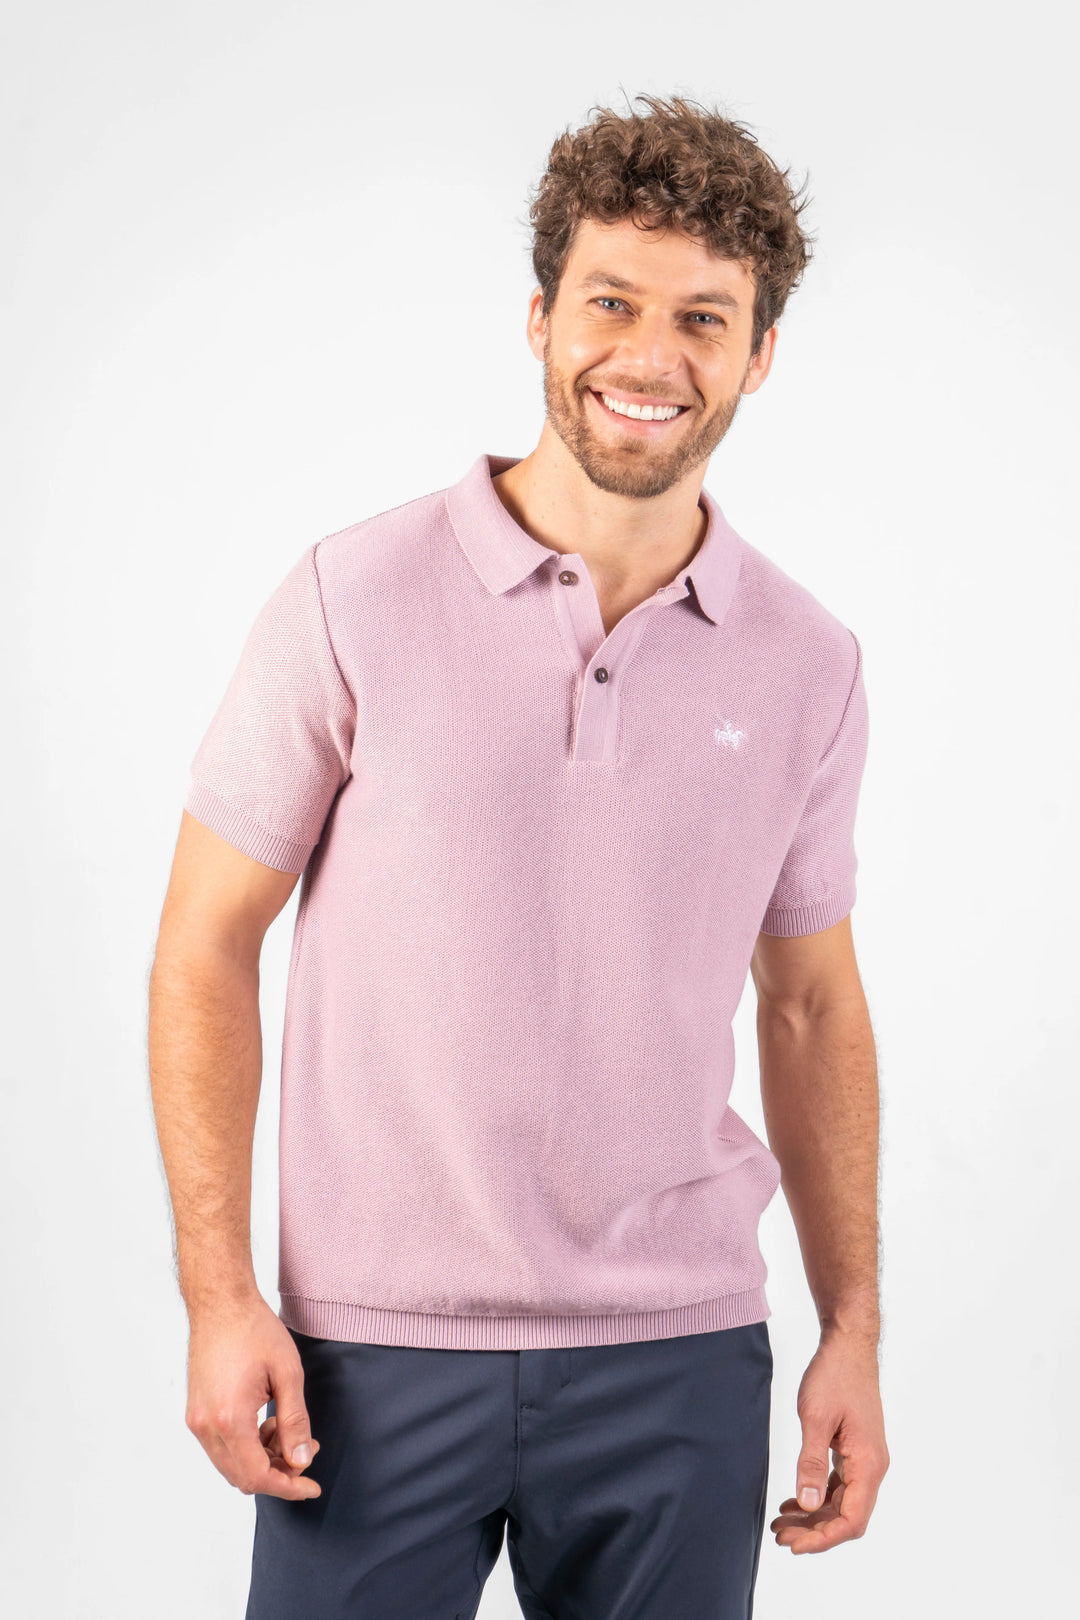 Camiseta para hombre polo. Tejida color lila, horma slim fit